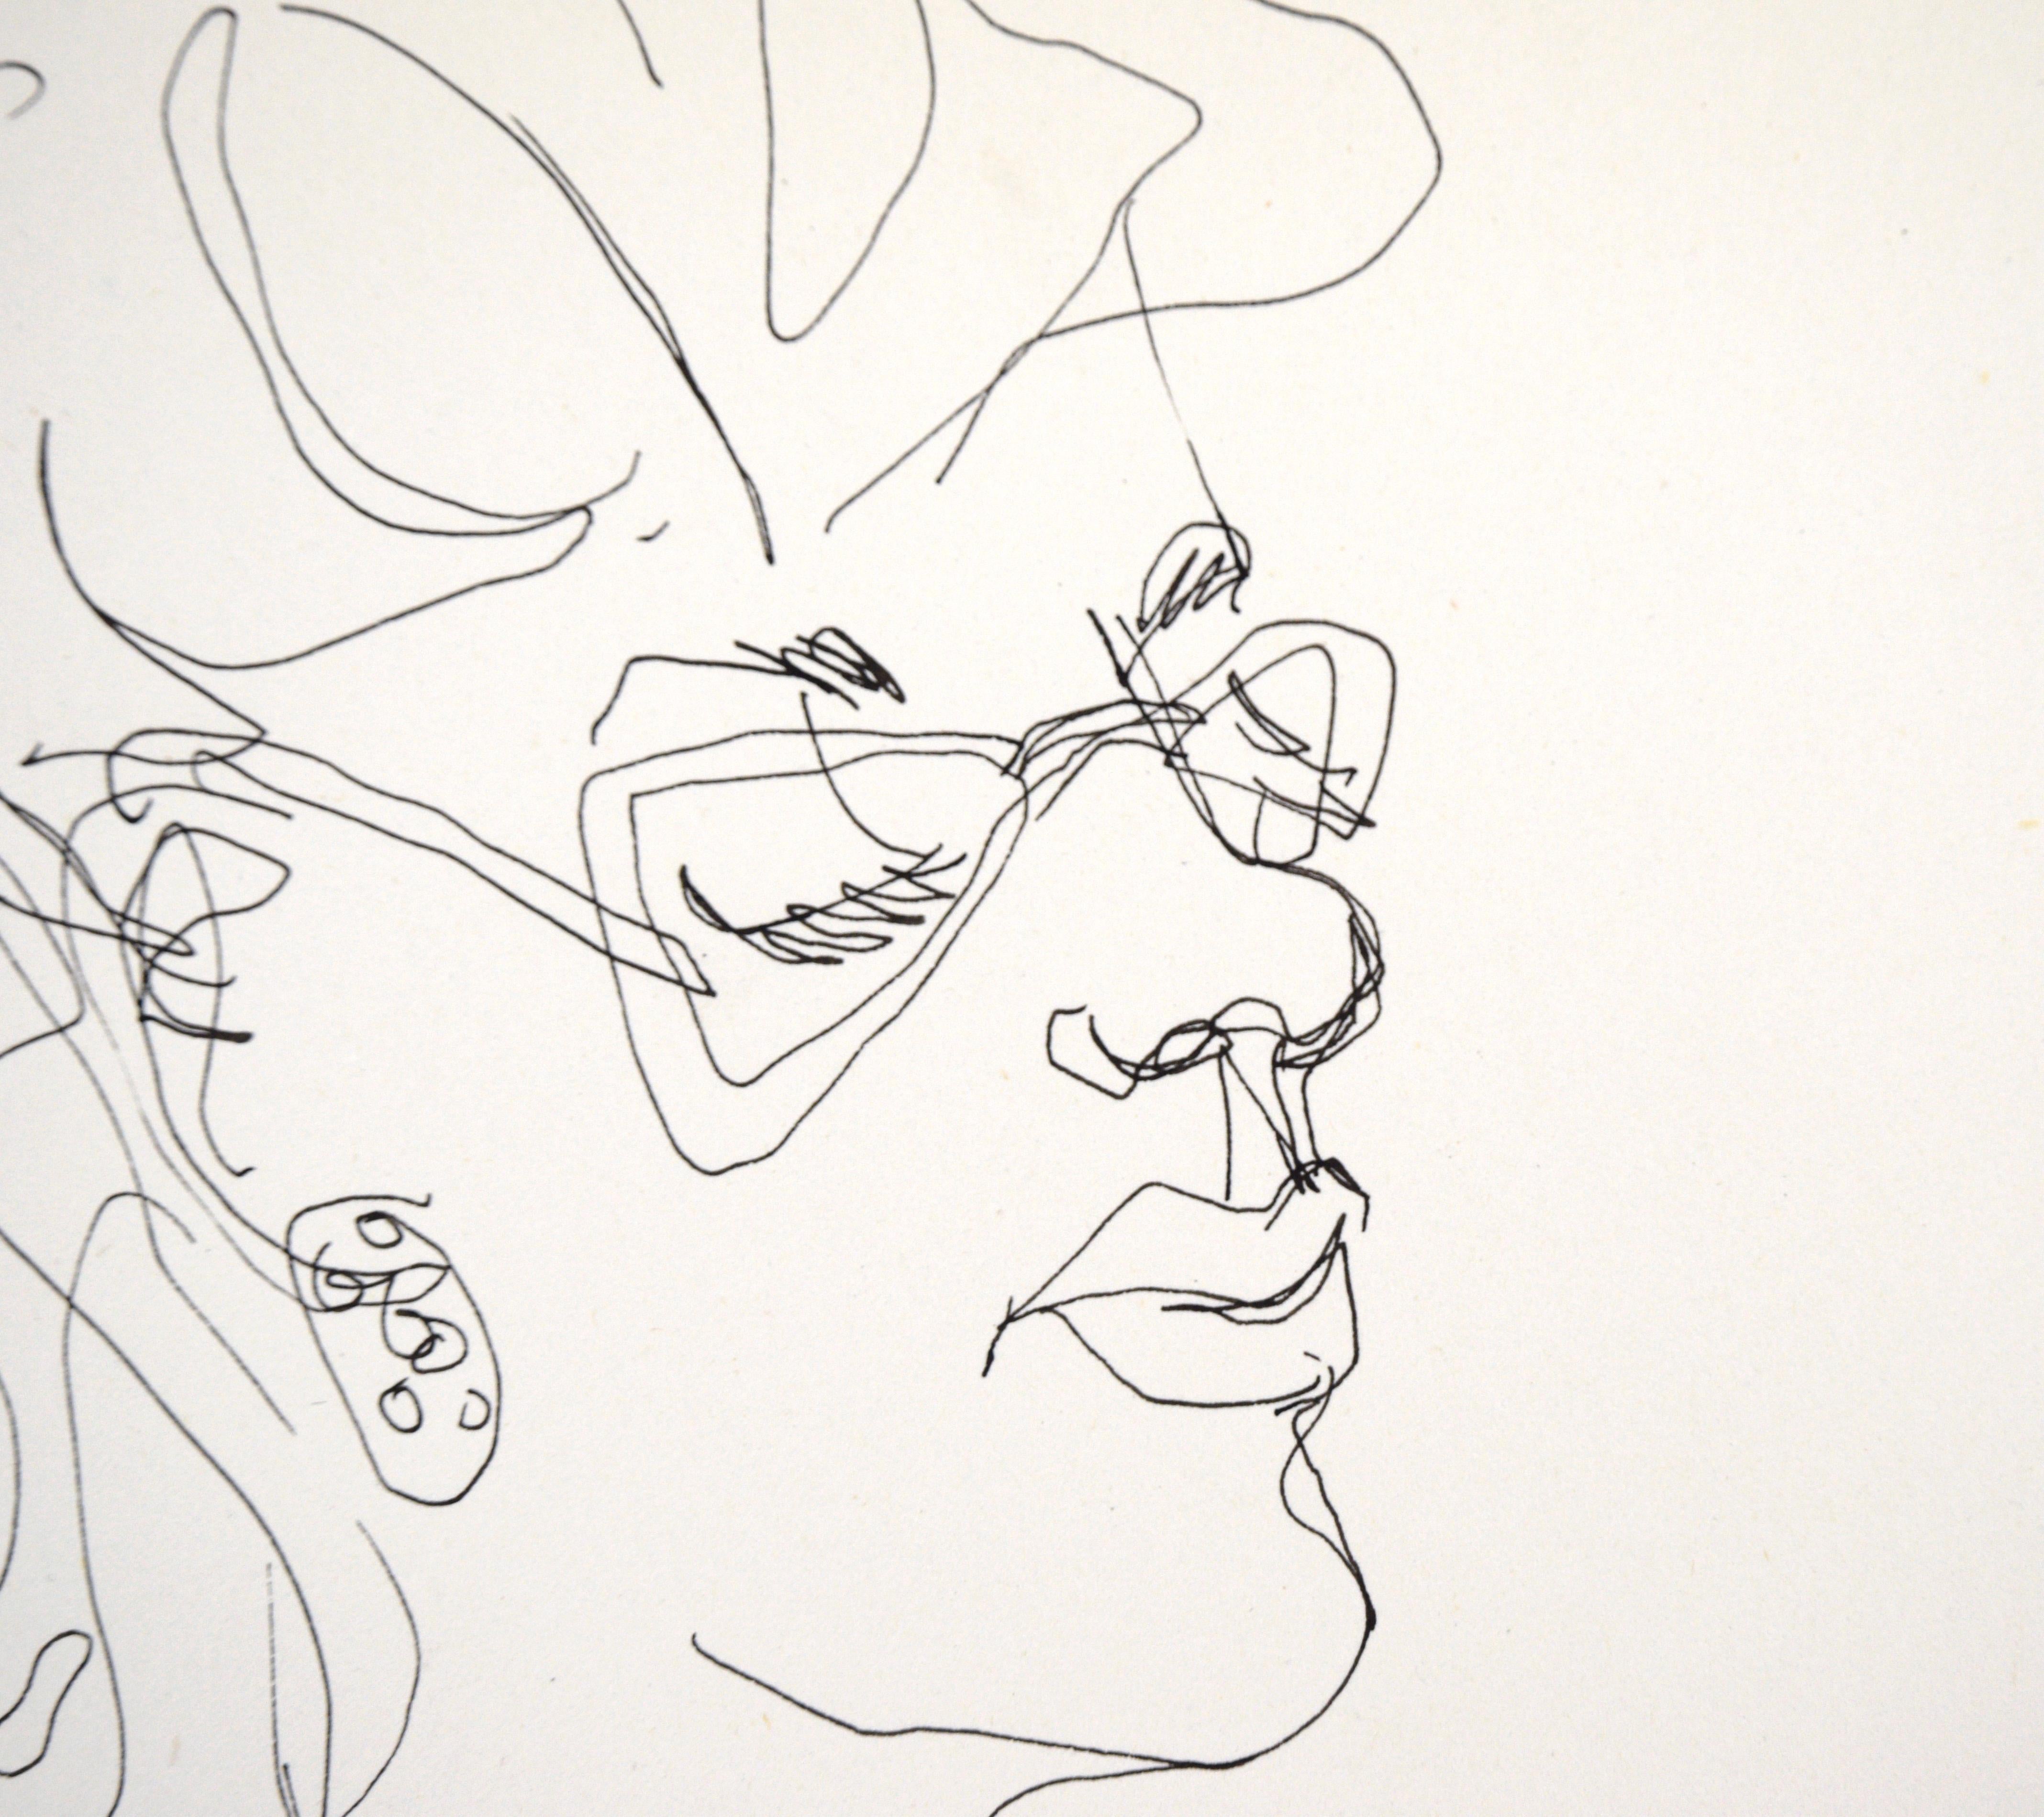 Porträt einer Frau mit Brille - Zeichnung mit Stift auf Papier

Stilisierte Zeichnung des unbekannten Künstlers 